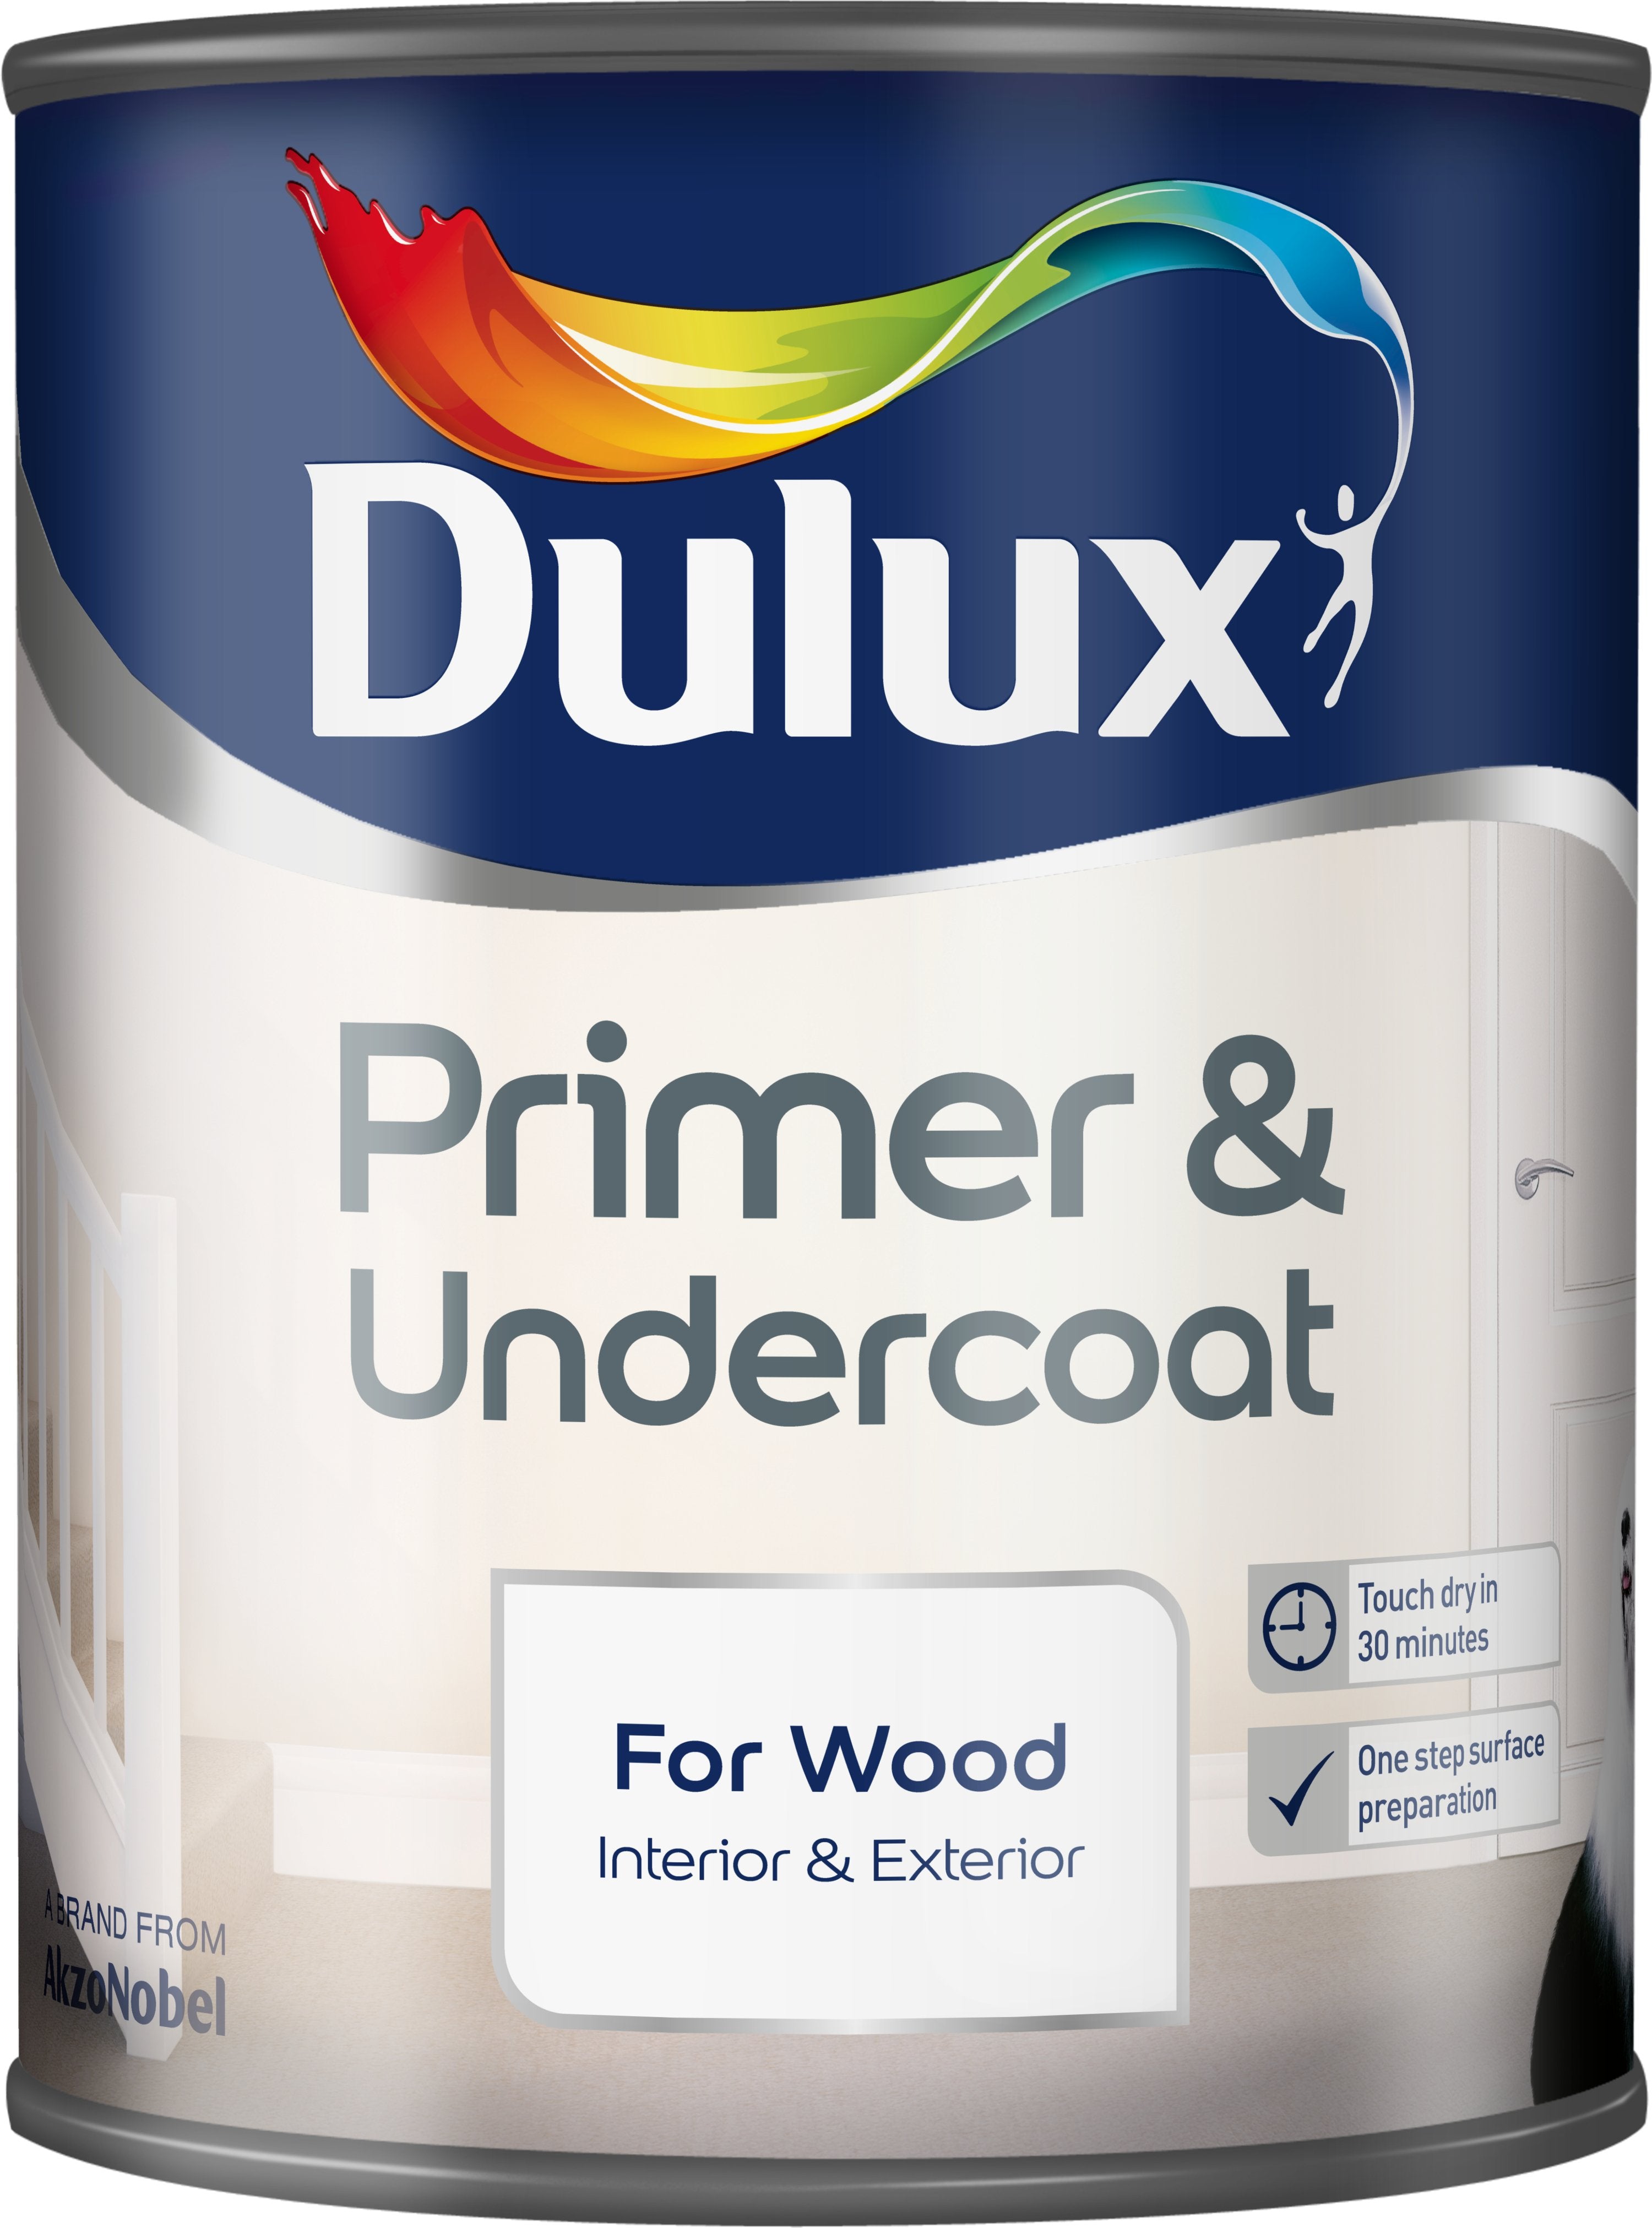 Dulux-Primer-&-Undercoat-Paint-For-Wood-750ml